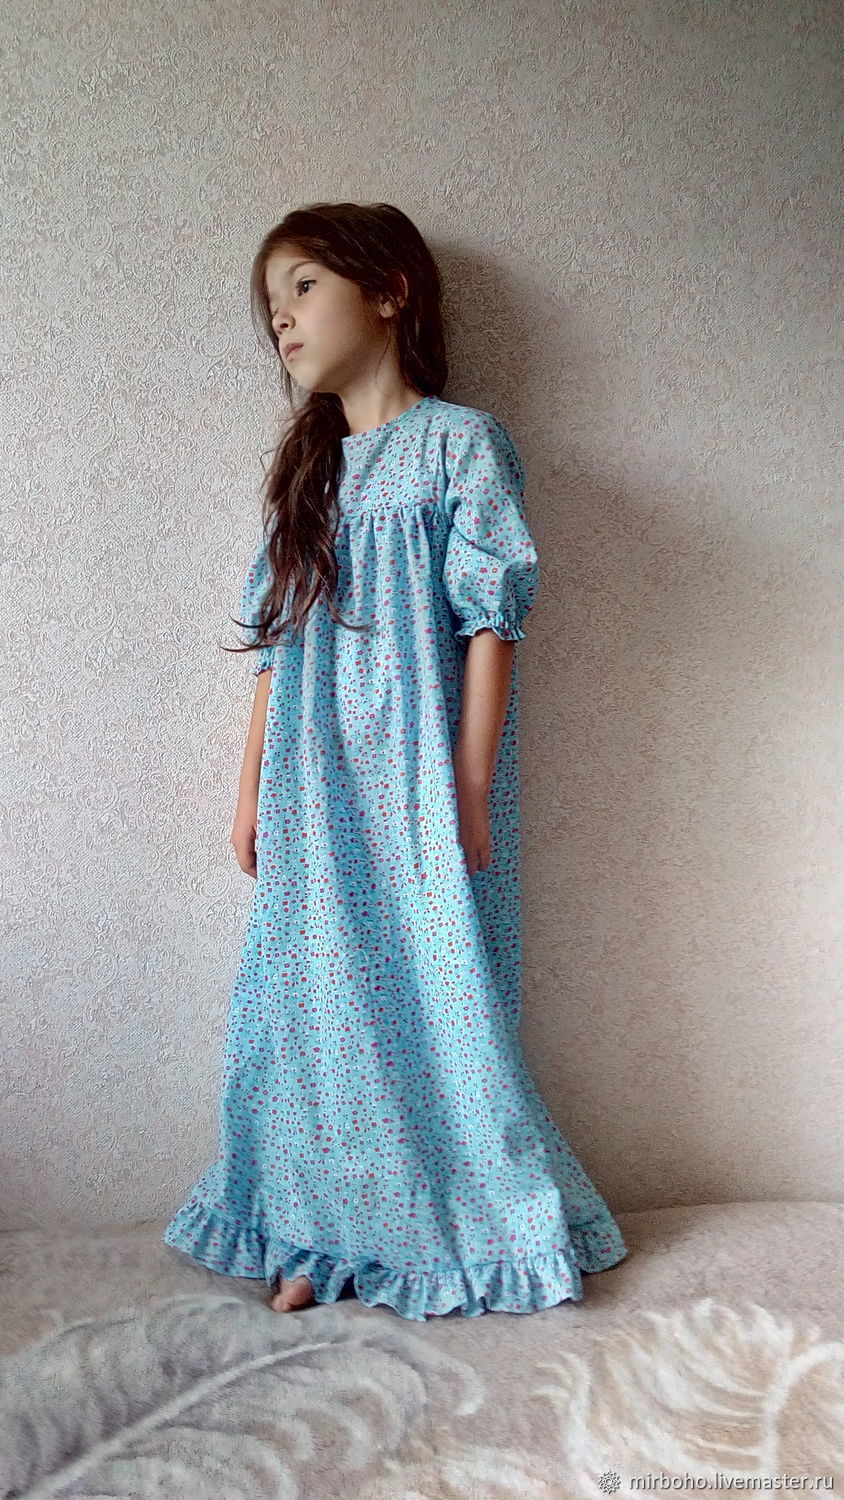 Сорочка для девочки – комфортная одежда для сна